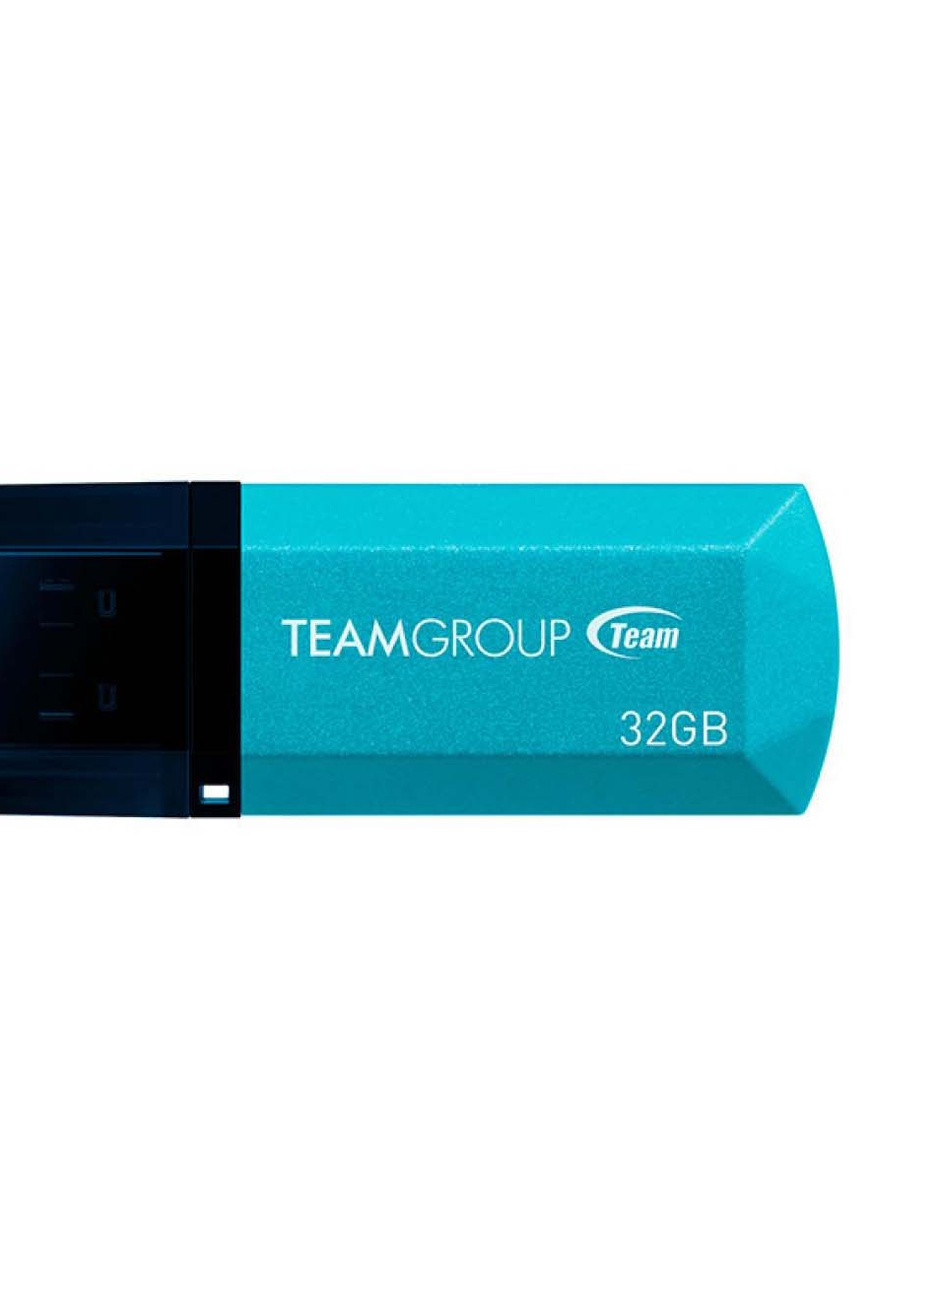 USB флеш накопитель (TC15332GL01) Team 32gb c153 blue usb 2.0 (232750116)